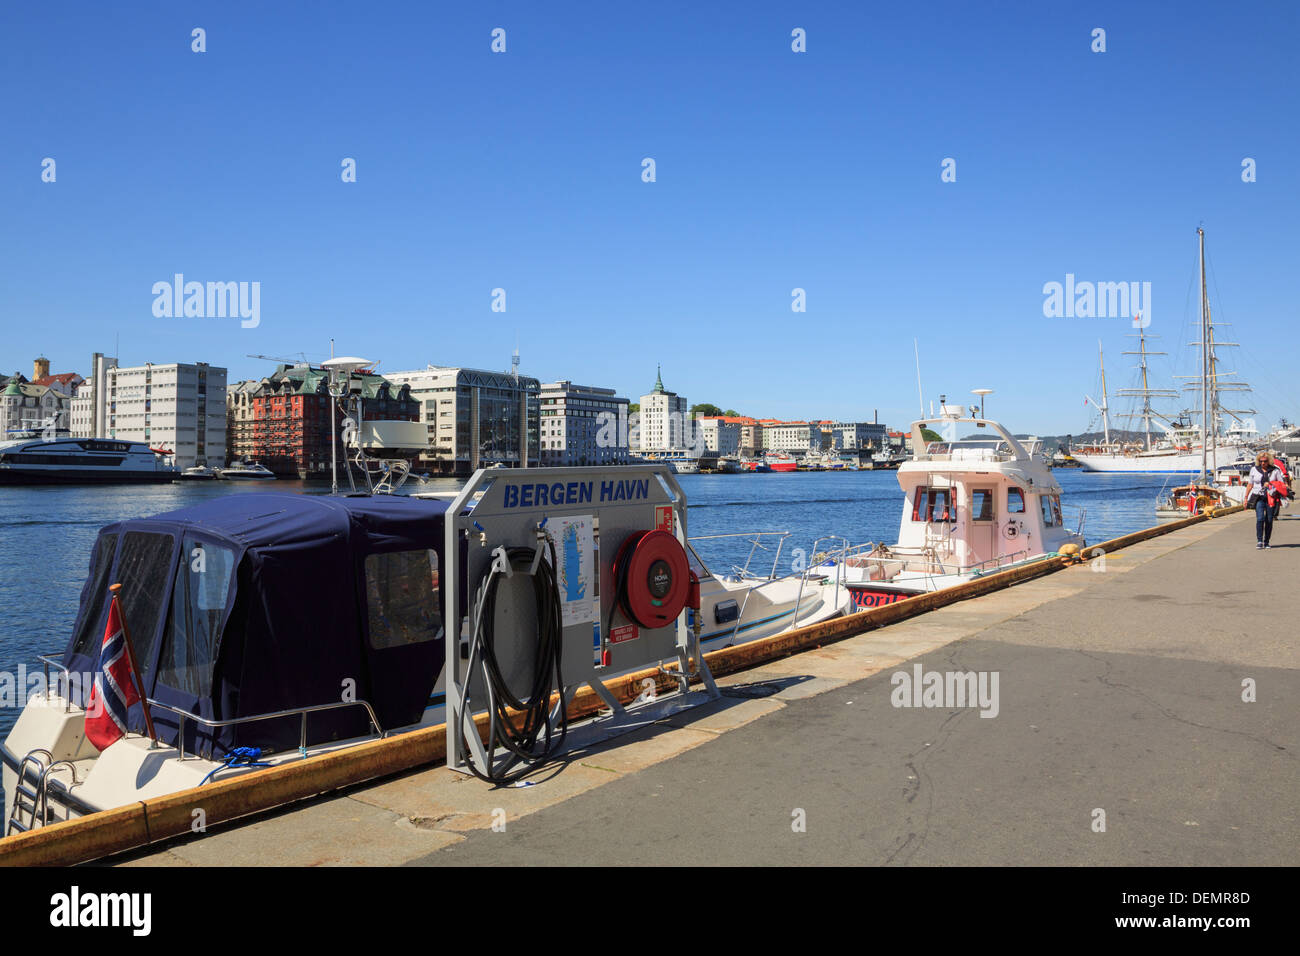 Facilities for moored boats in Vågen harbour, Port of Bergen Havn, Hordaland, Norway, Scandinavia Stock Photo